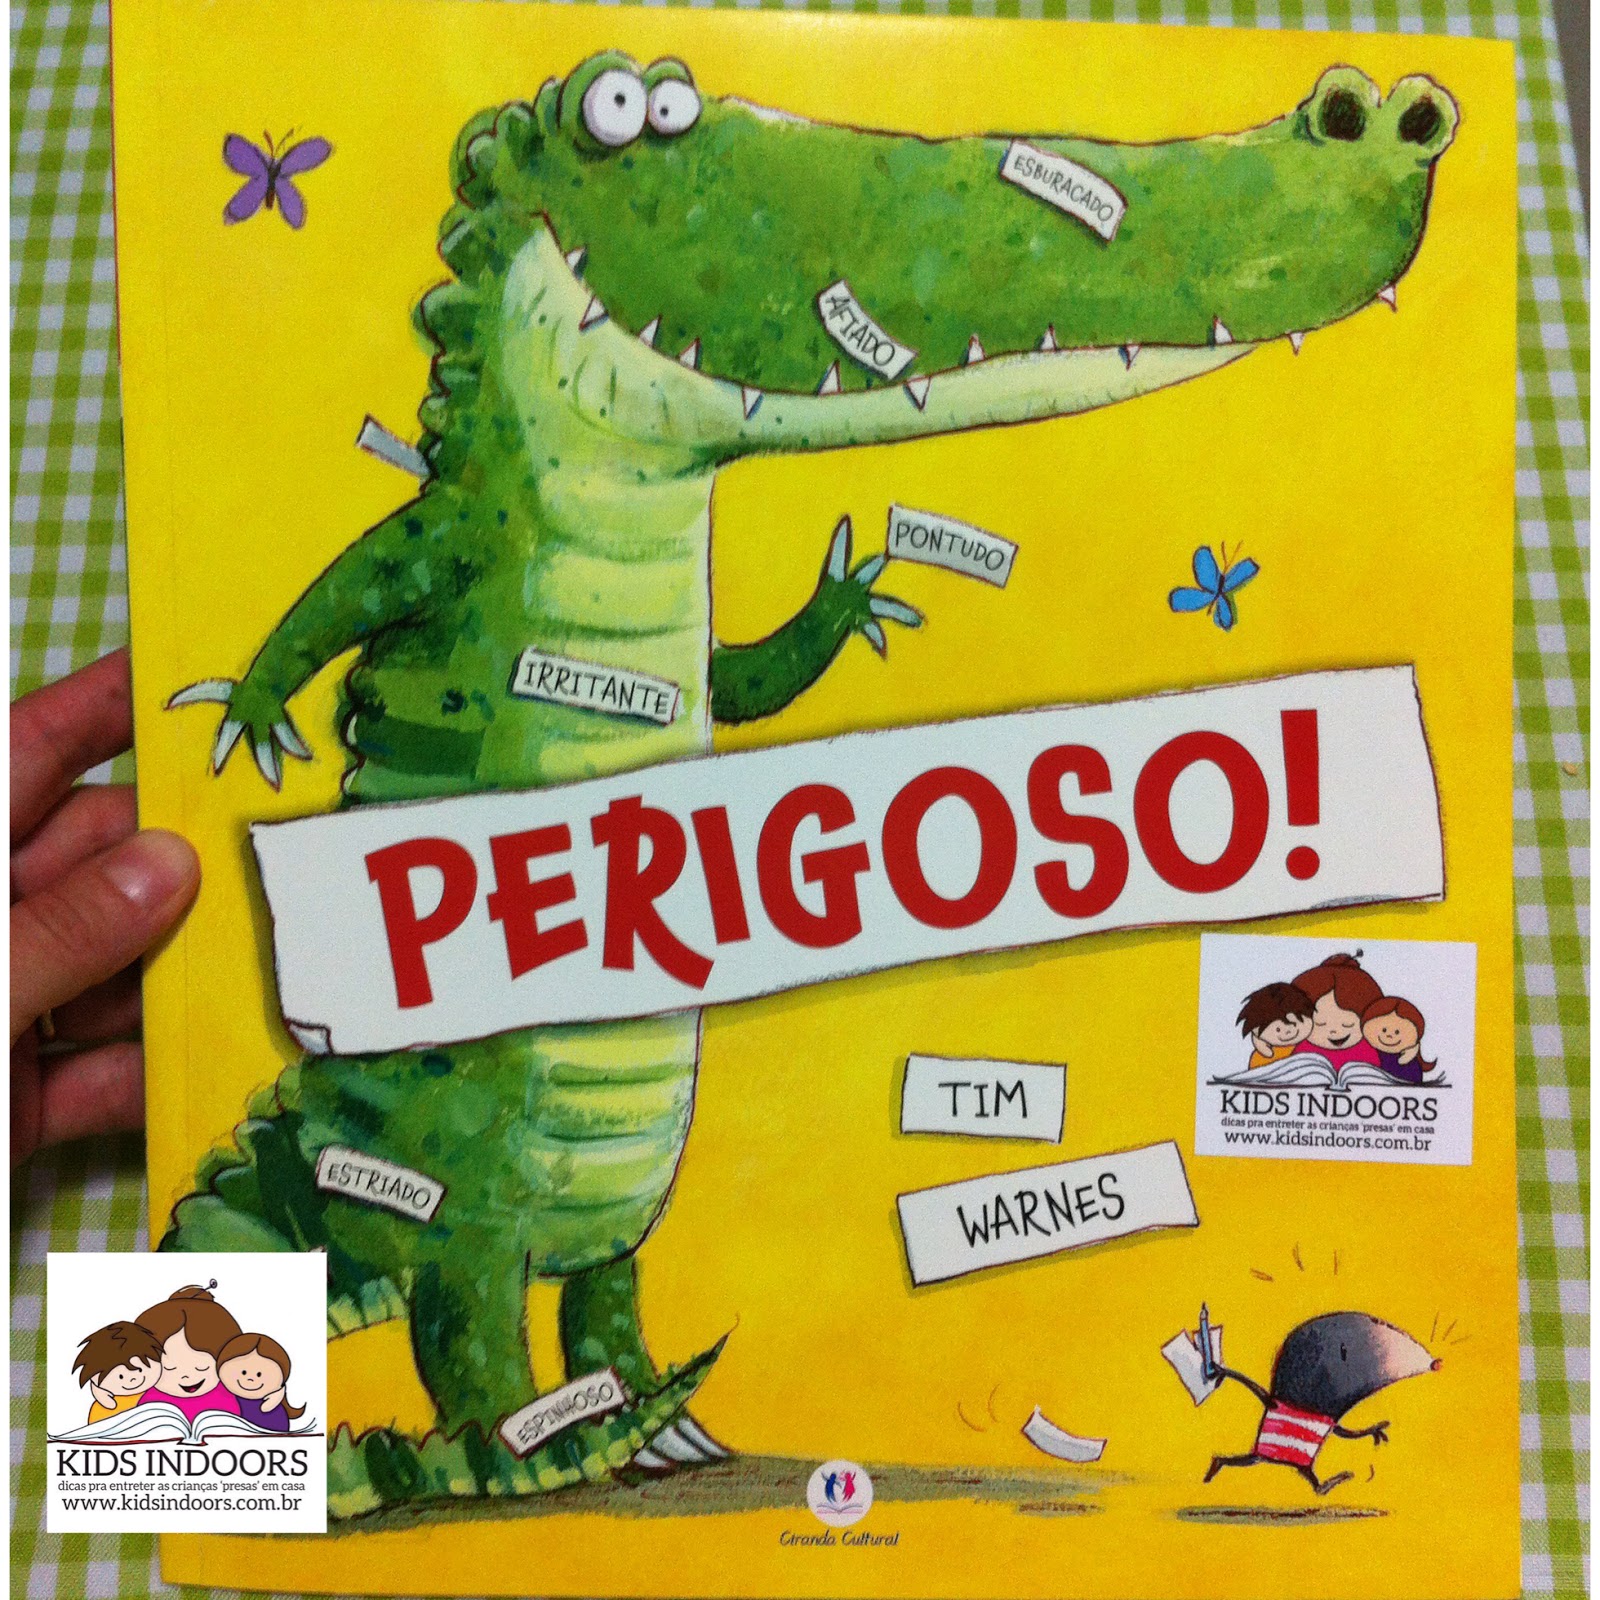  Livro de colorir para crianças dinossauros perigosos